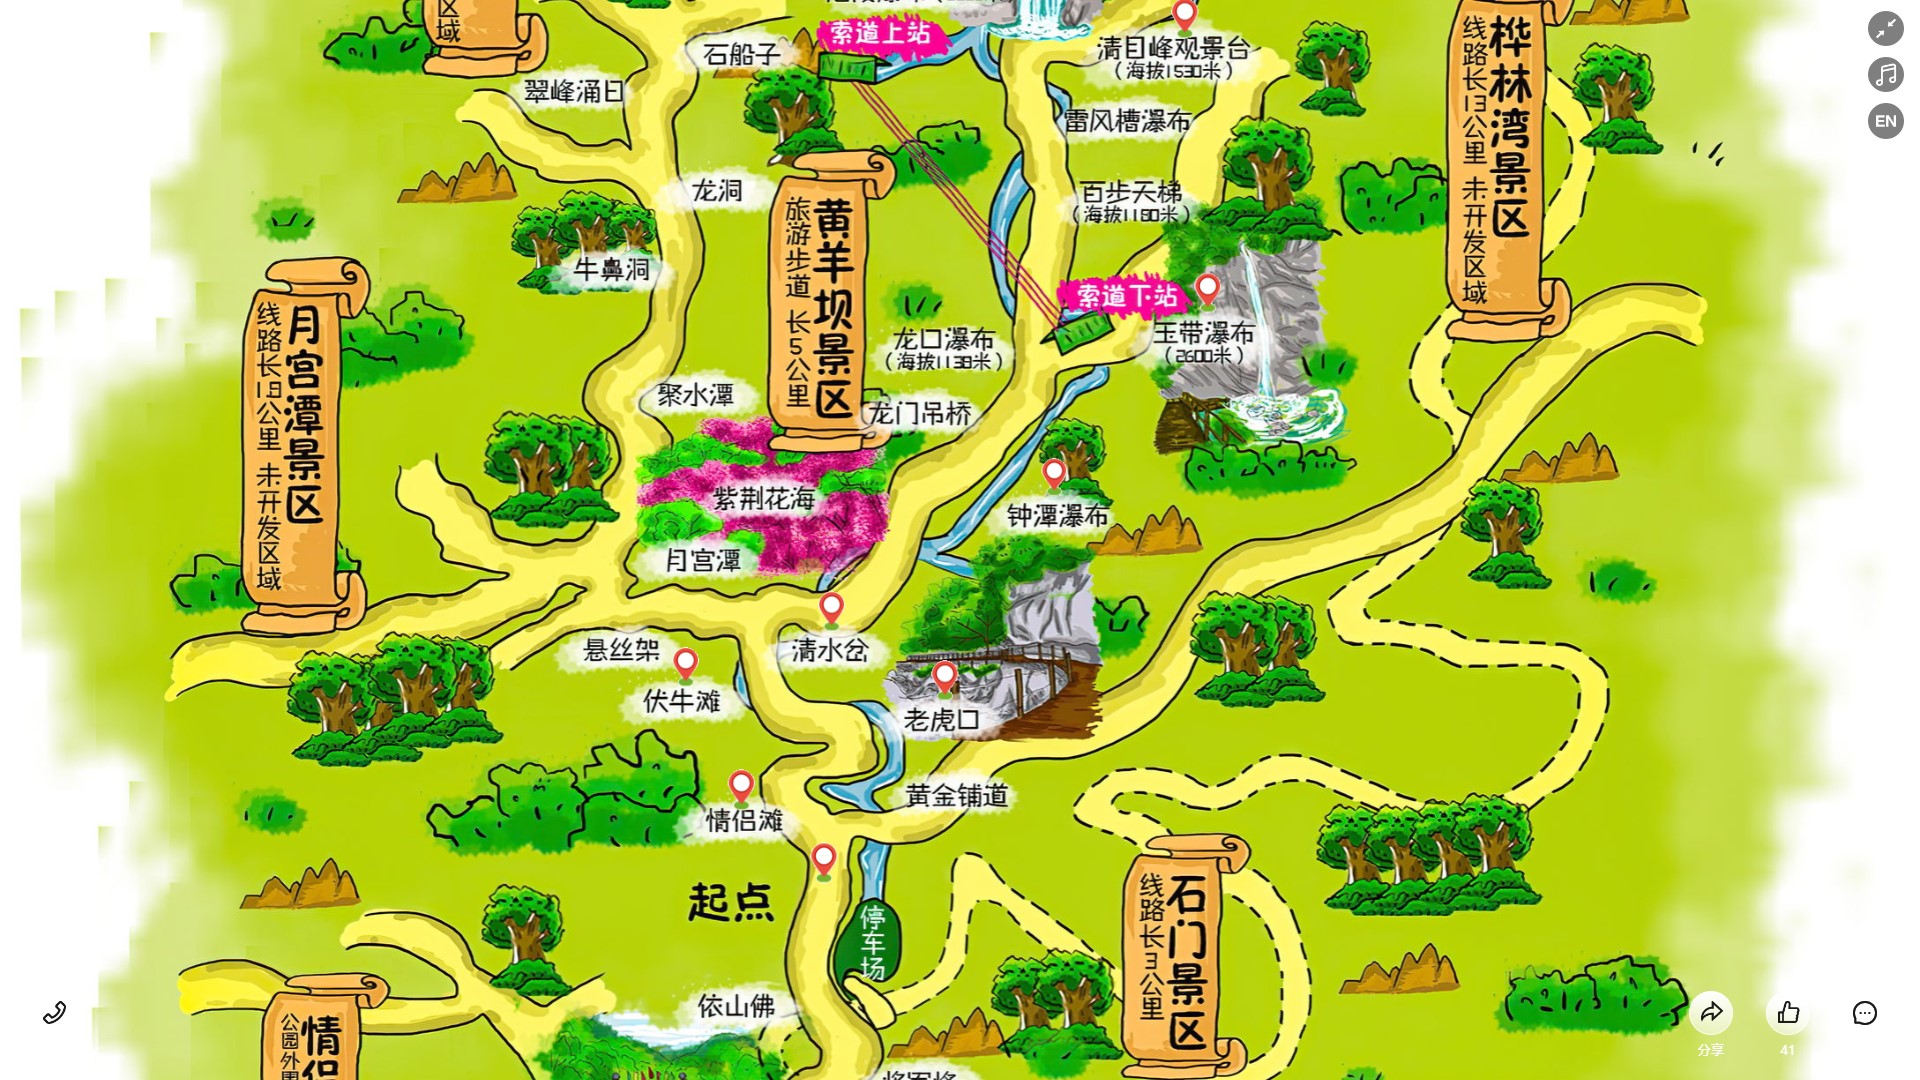 金波乡景区导览系统